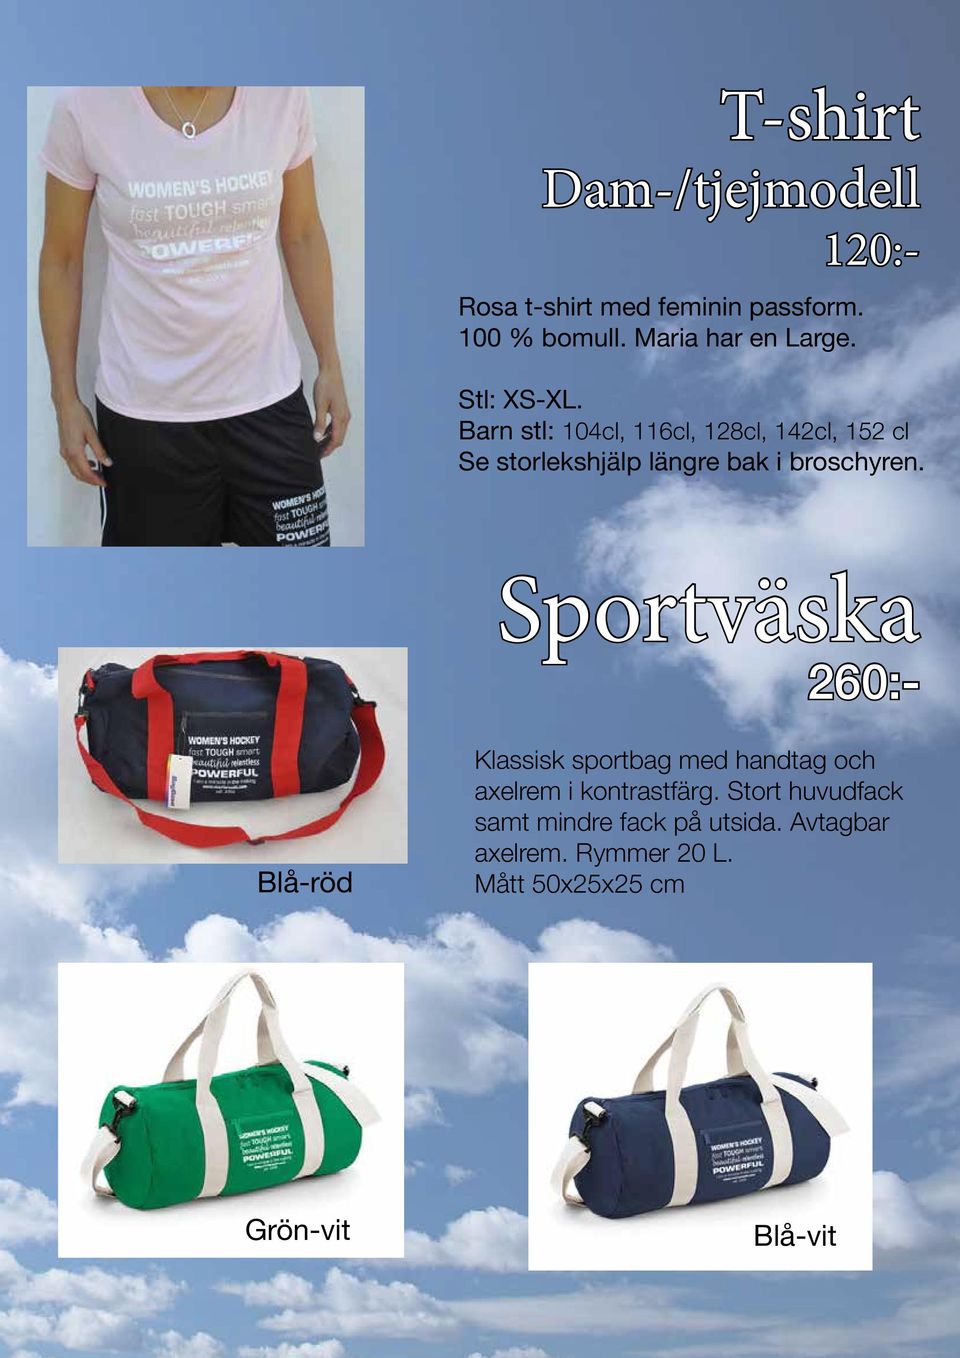 Sportväska 260:- Blå-röd Klassisk sportbag med handtag och axelrem i kontrastfärg.